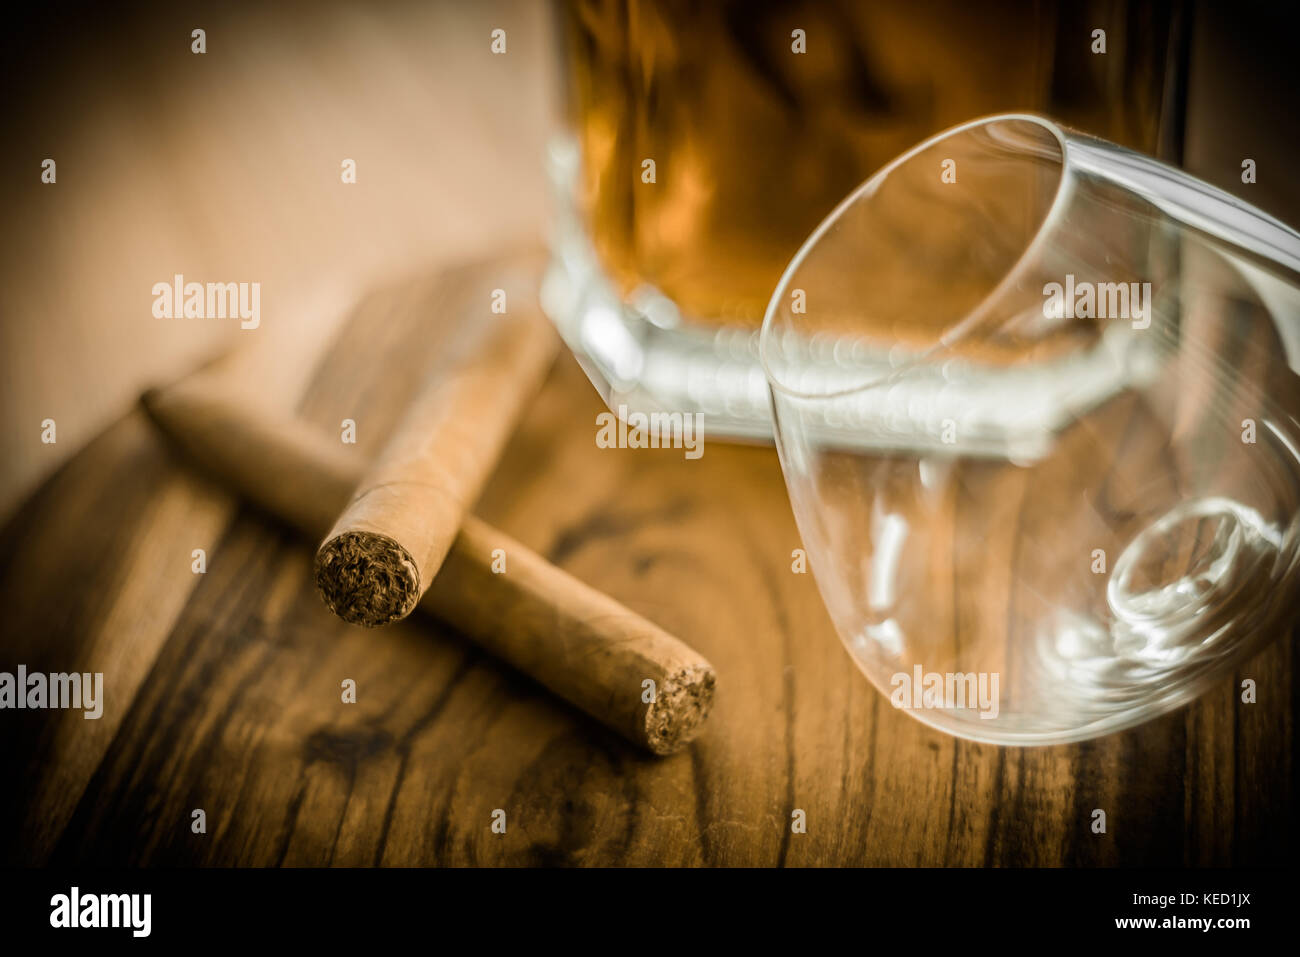 Nahaufnahme der beiden Zigarren, ein Glas und eine Flasche Rum auf einer hölzernen Oberfläche Stockfoto